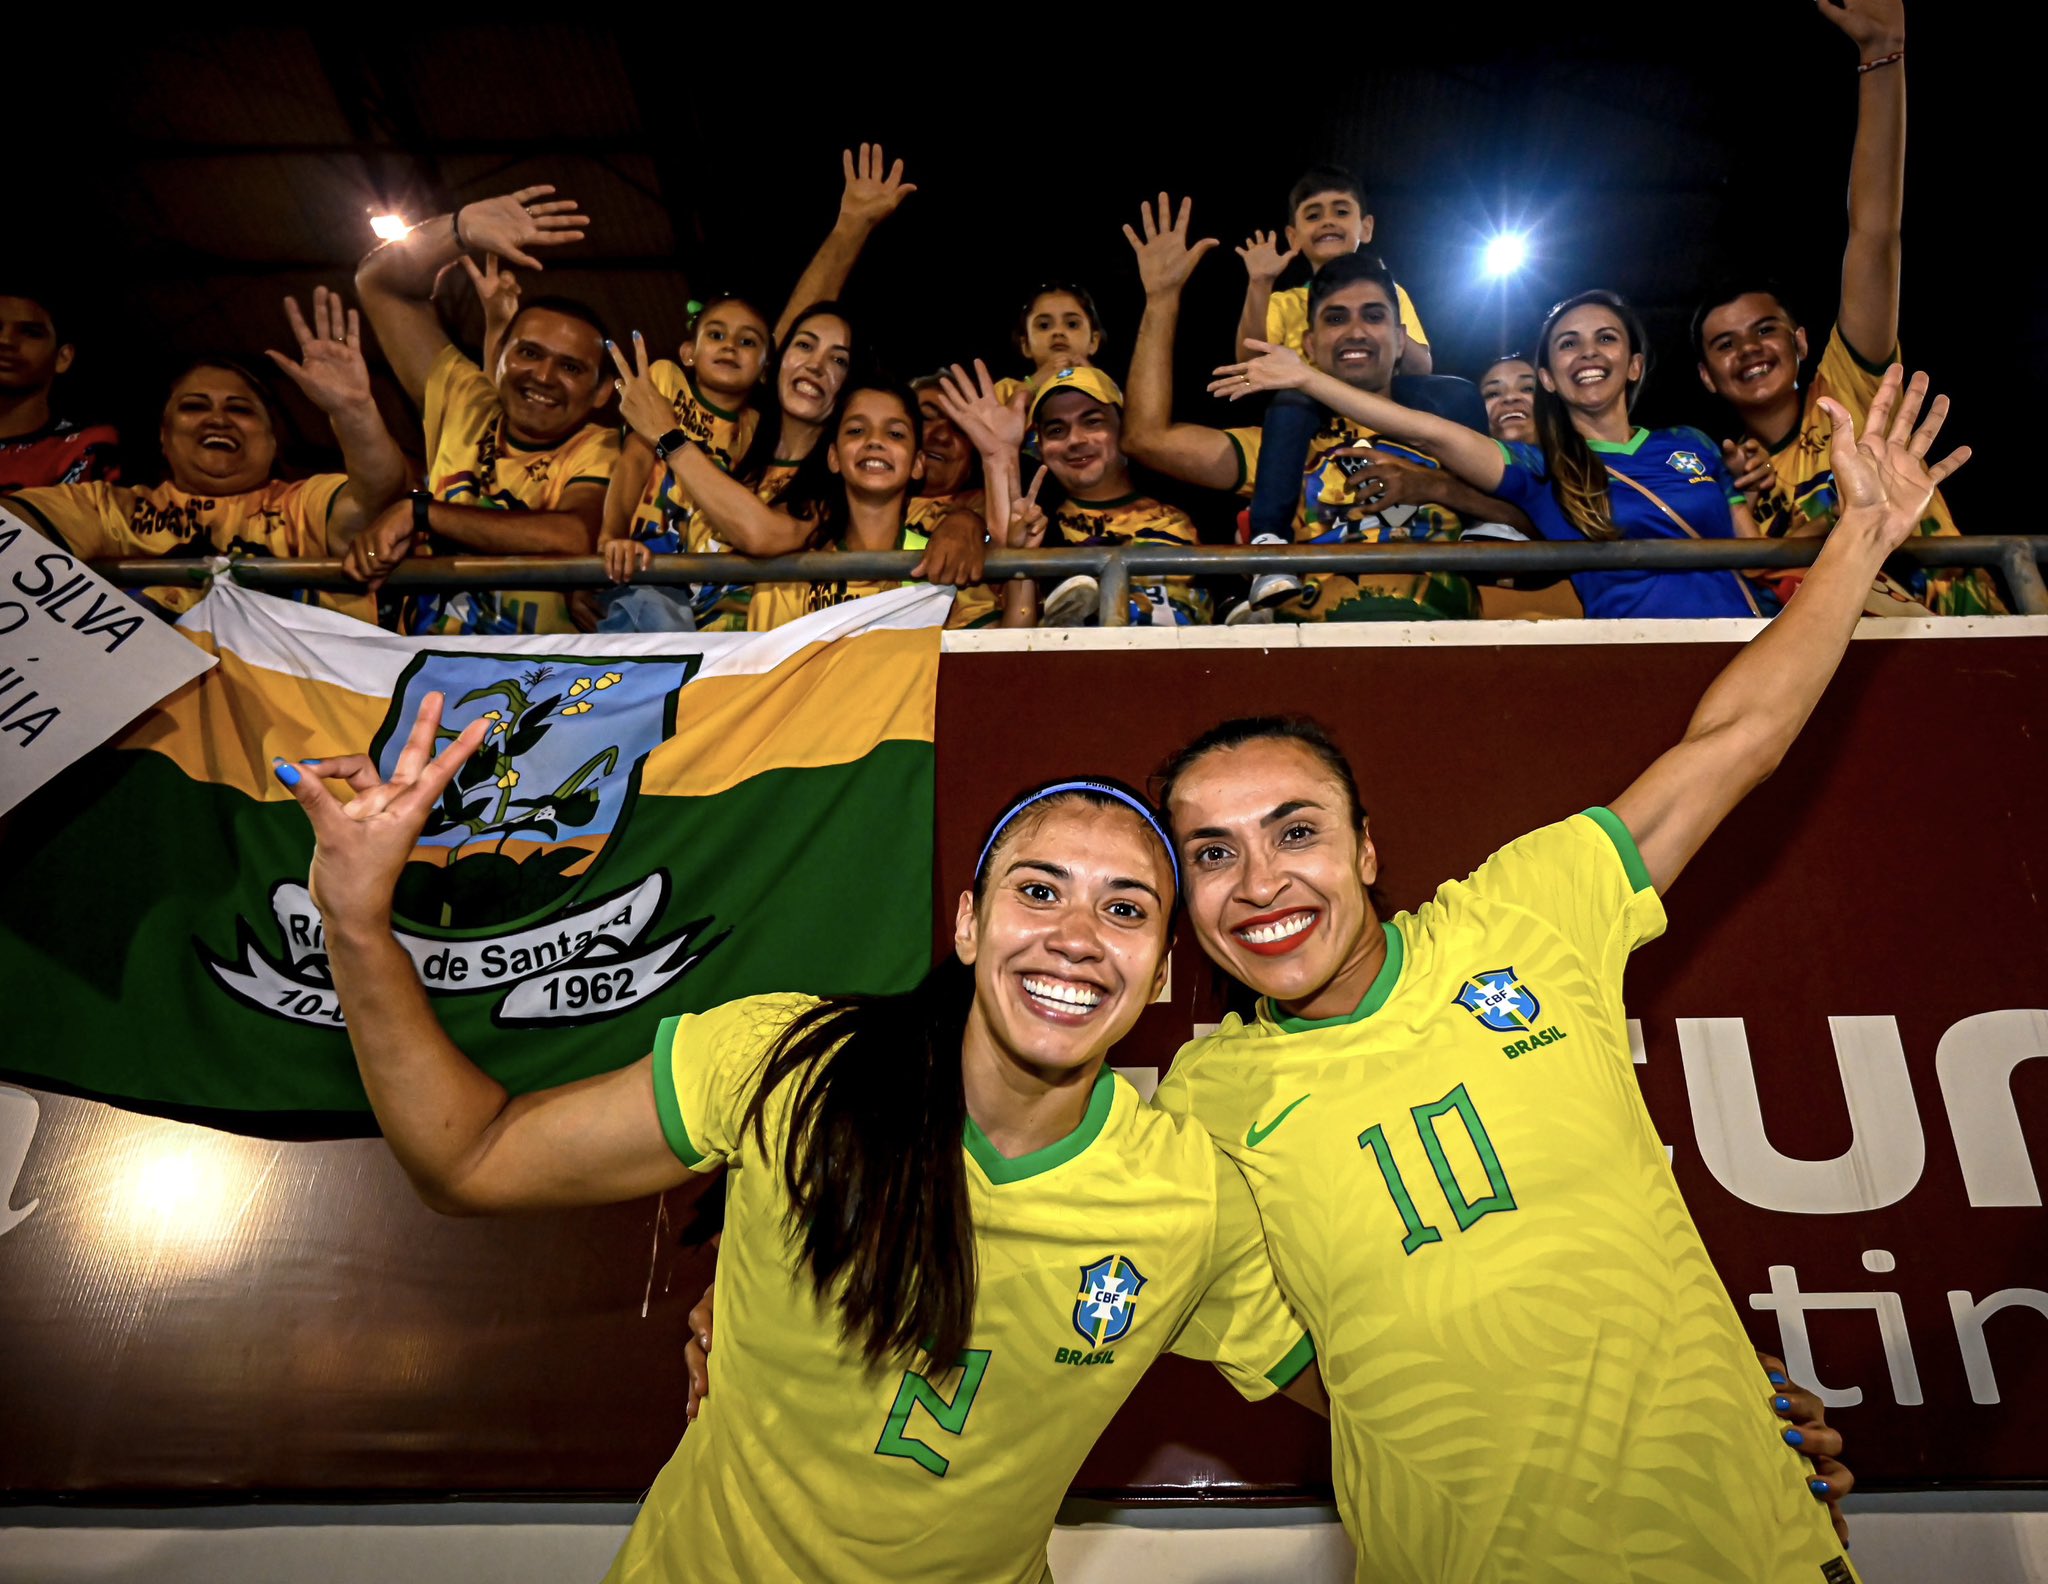 Seleção Feminina de Futebol on X: Bom dia, meu Brasil! 🇧🇷 Hoje tem  #GuerreirasDoBrasil em campo pelo segundo jogo do Torneio Internacional de Futebol  Feminino! Deixe sua mensagem positiva nos comentários e